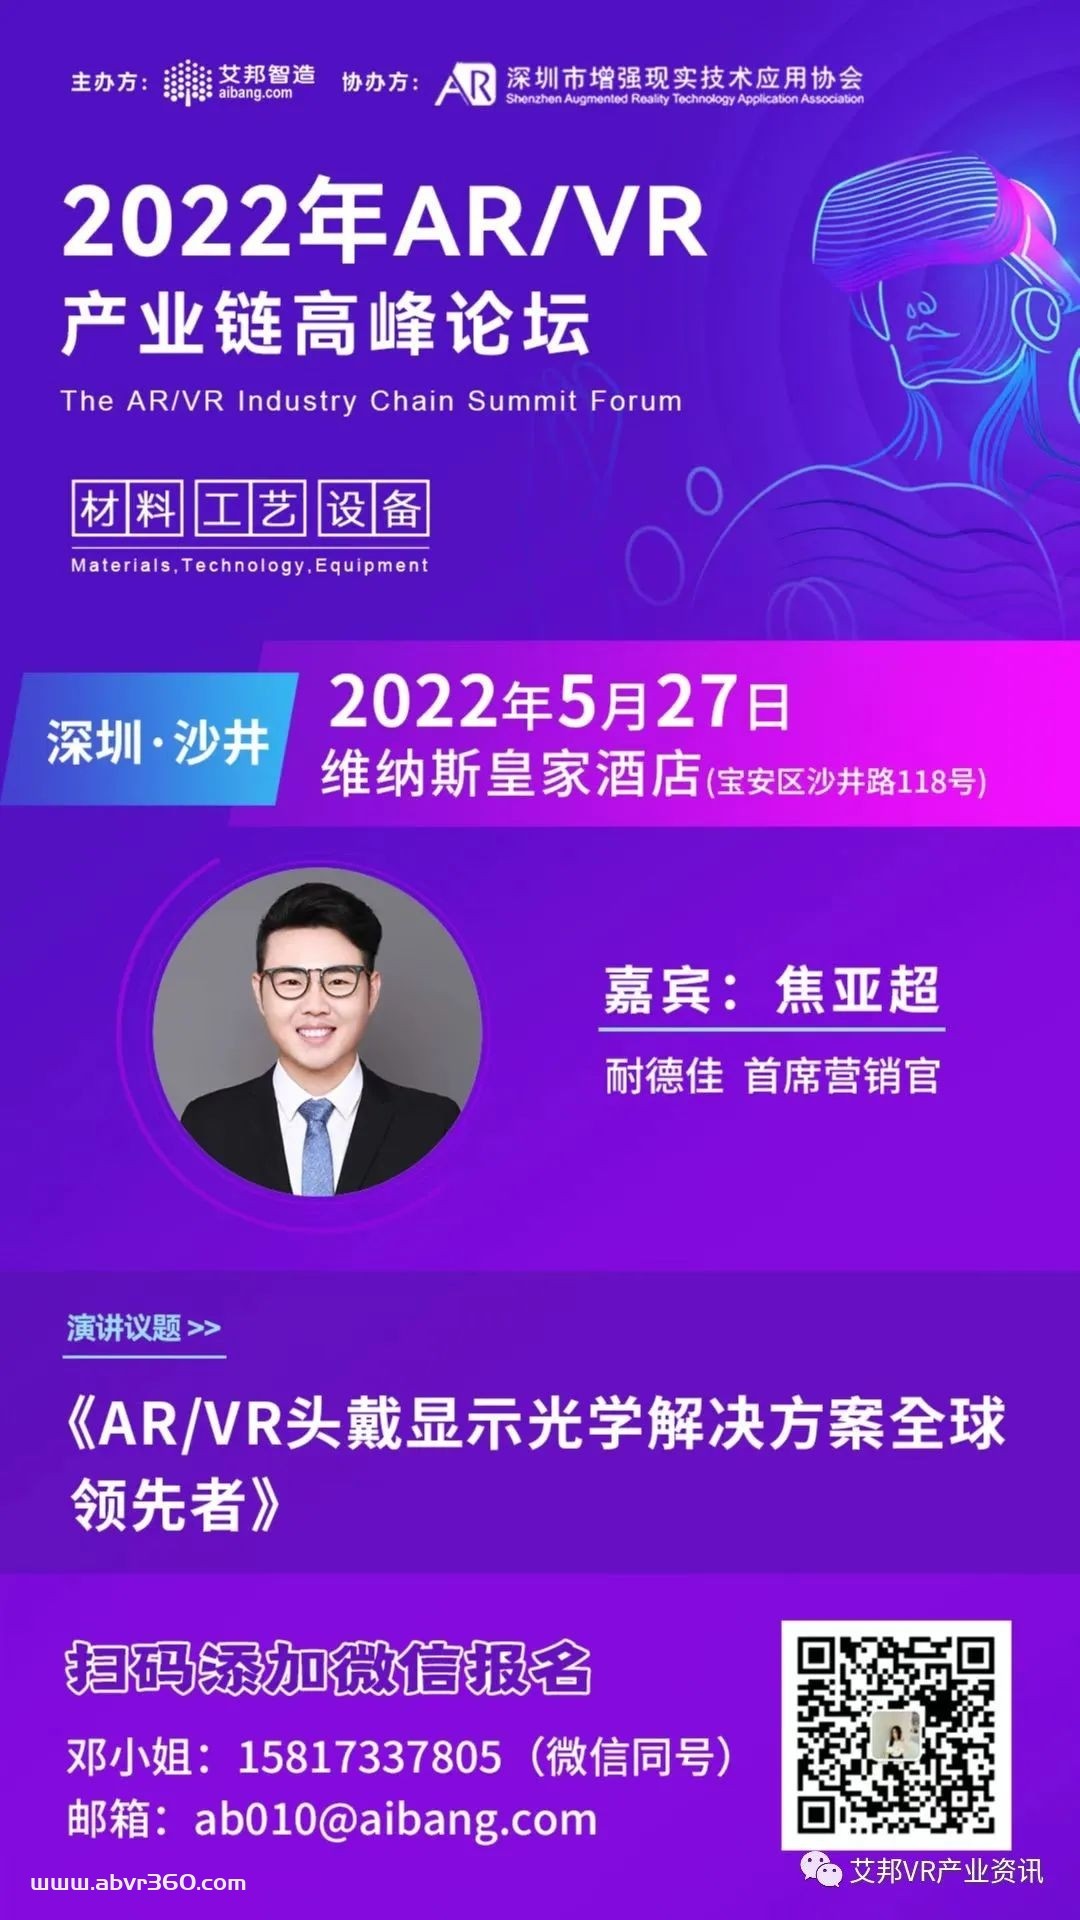 耐德佳将参与5月27日深圳AR/VR高峰论坛